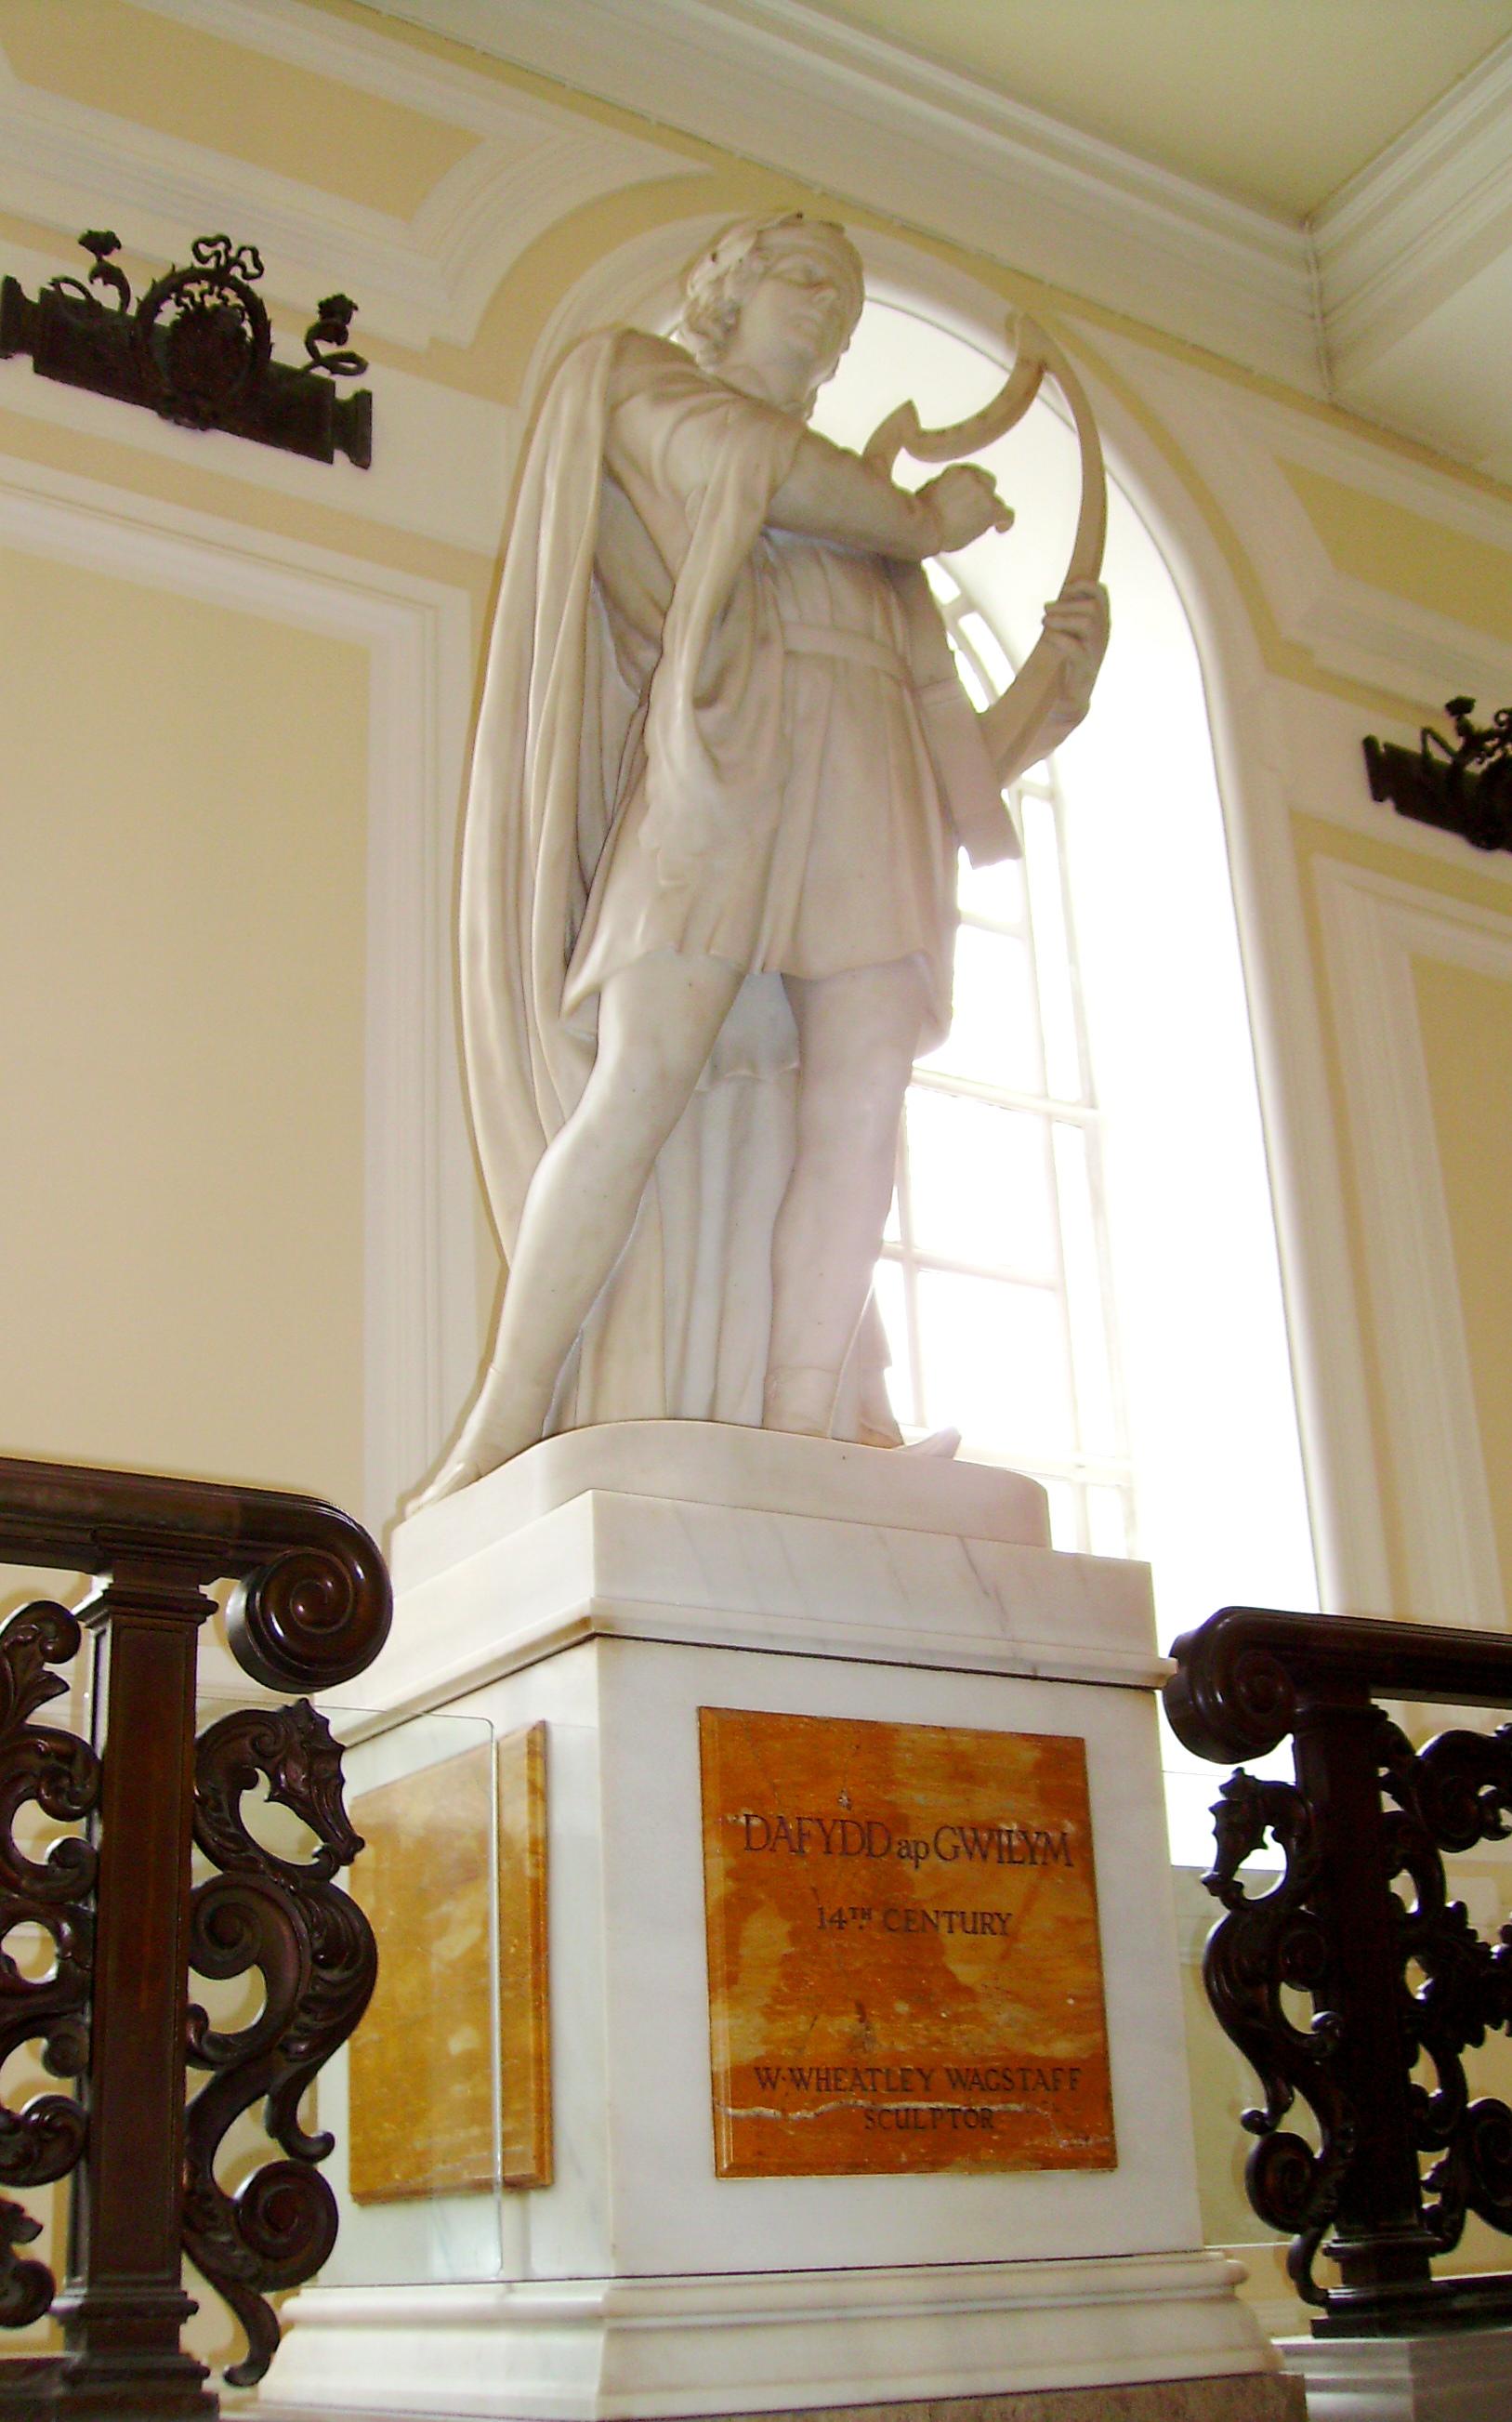 Dafydd ap Gwilym statue